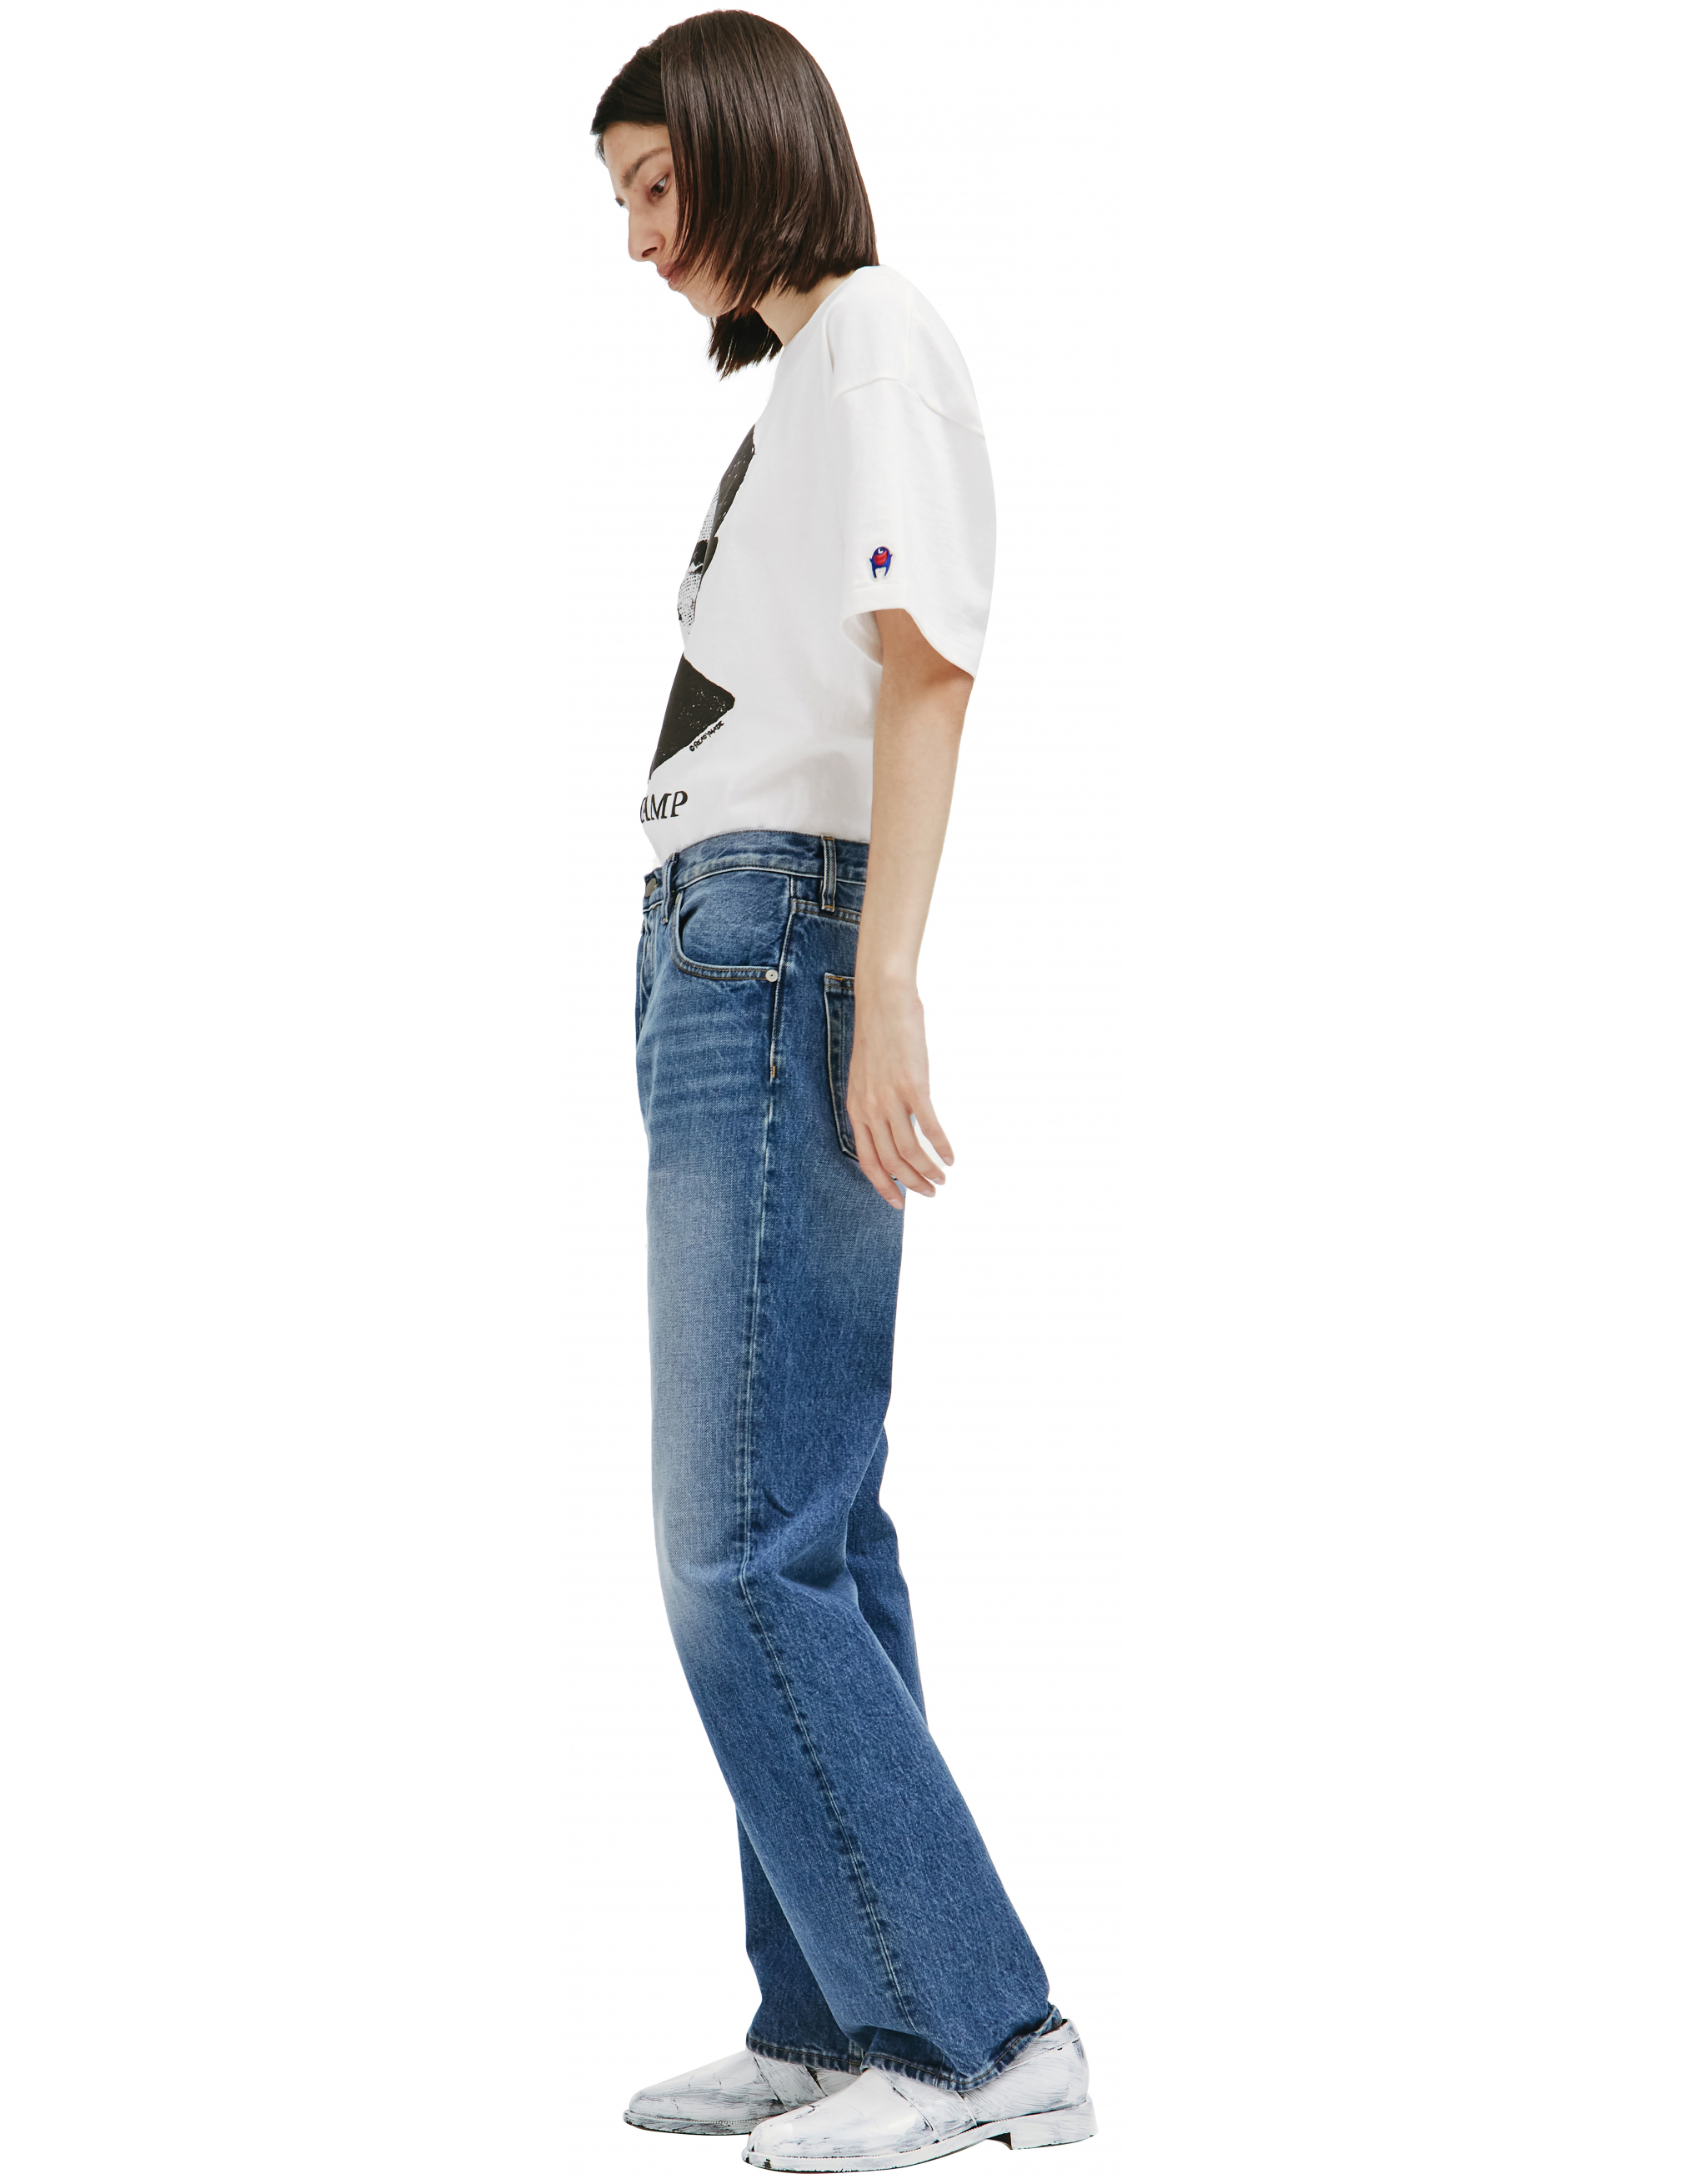 Прямые джинсы синего цвета Maison Margiela S50LA0189/S30561/966, размер 33;32;31 S50LA0189/S30561/966 - фото 2